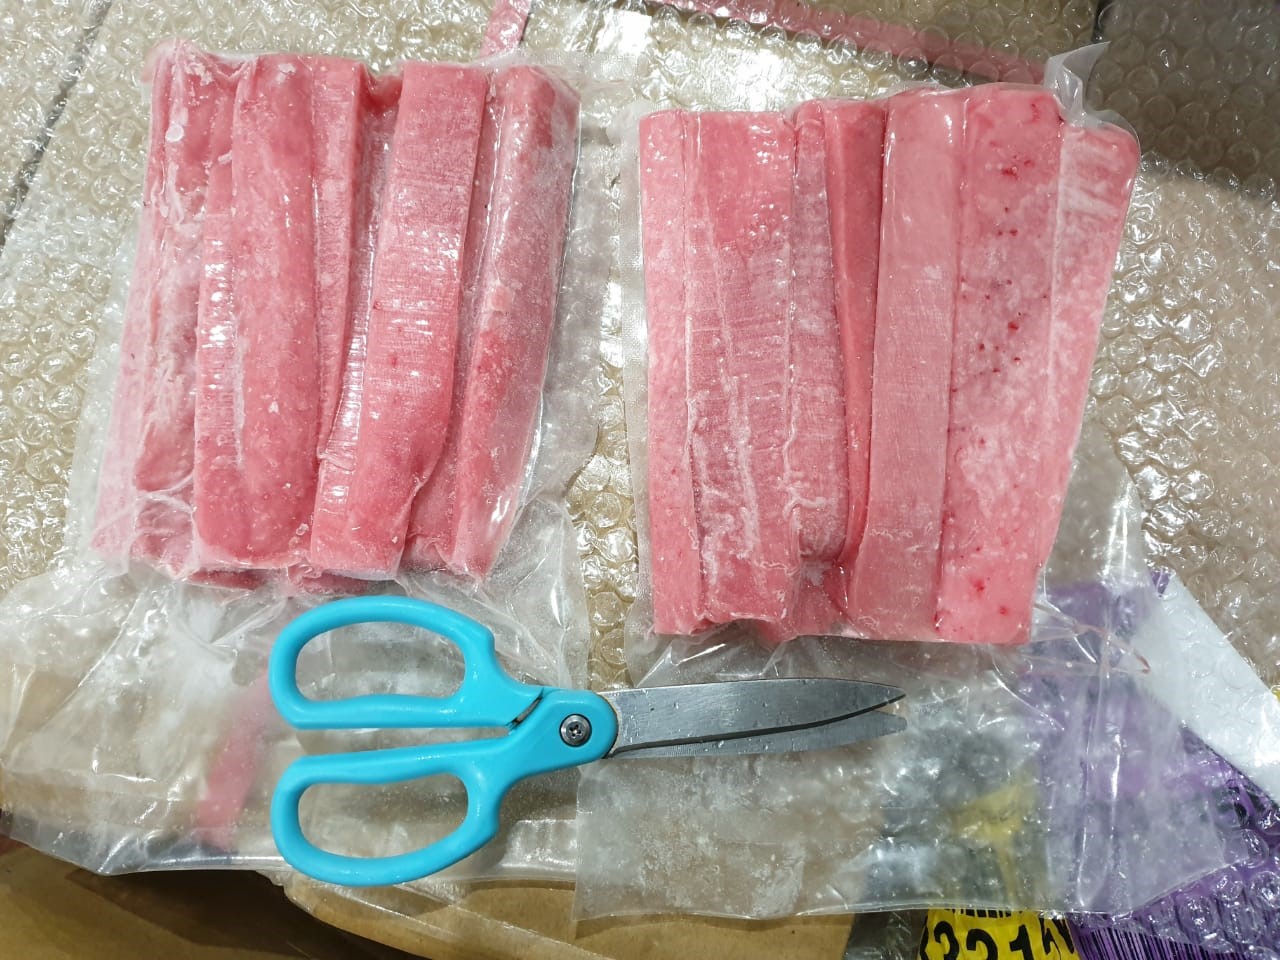 Tuna trimming